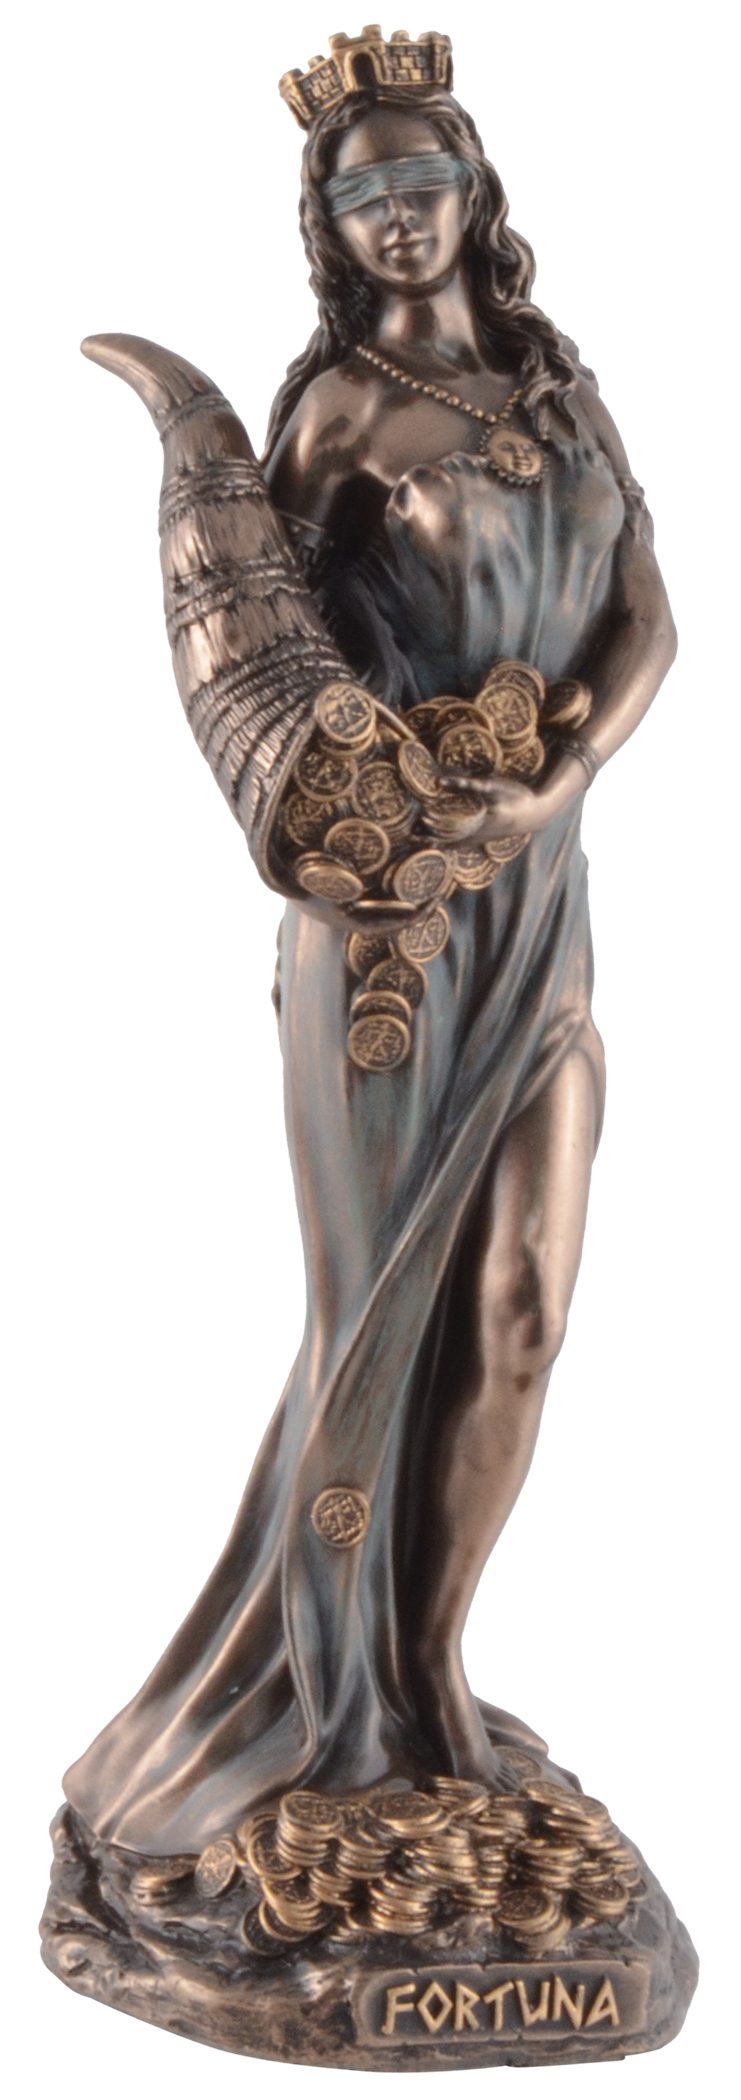 6x6x16 Römische Göttin Vogler Gmbh bronziert, Größe: Fortuna, ca. coloriert, L/B/H direct Veronesedesign, Dekofigur cm